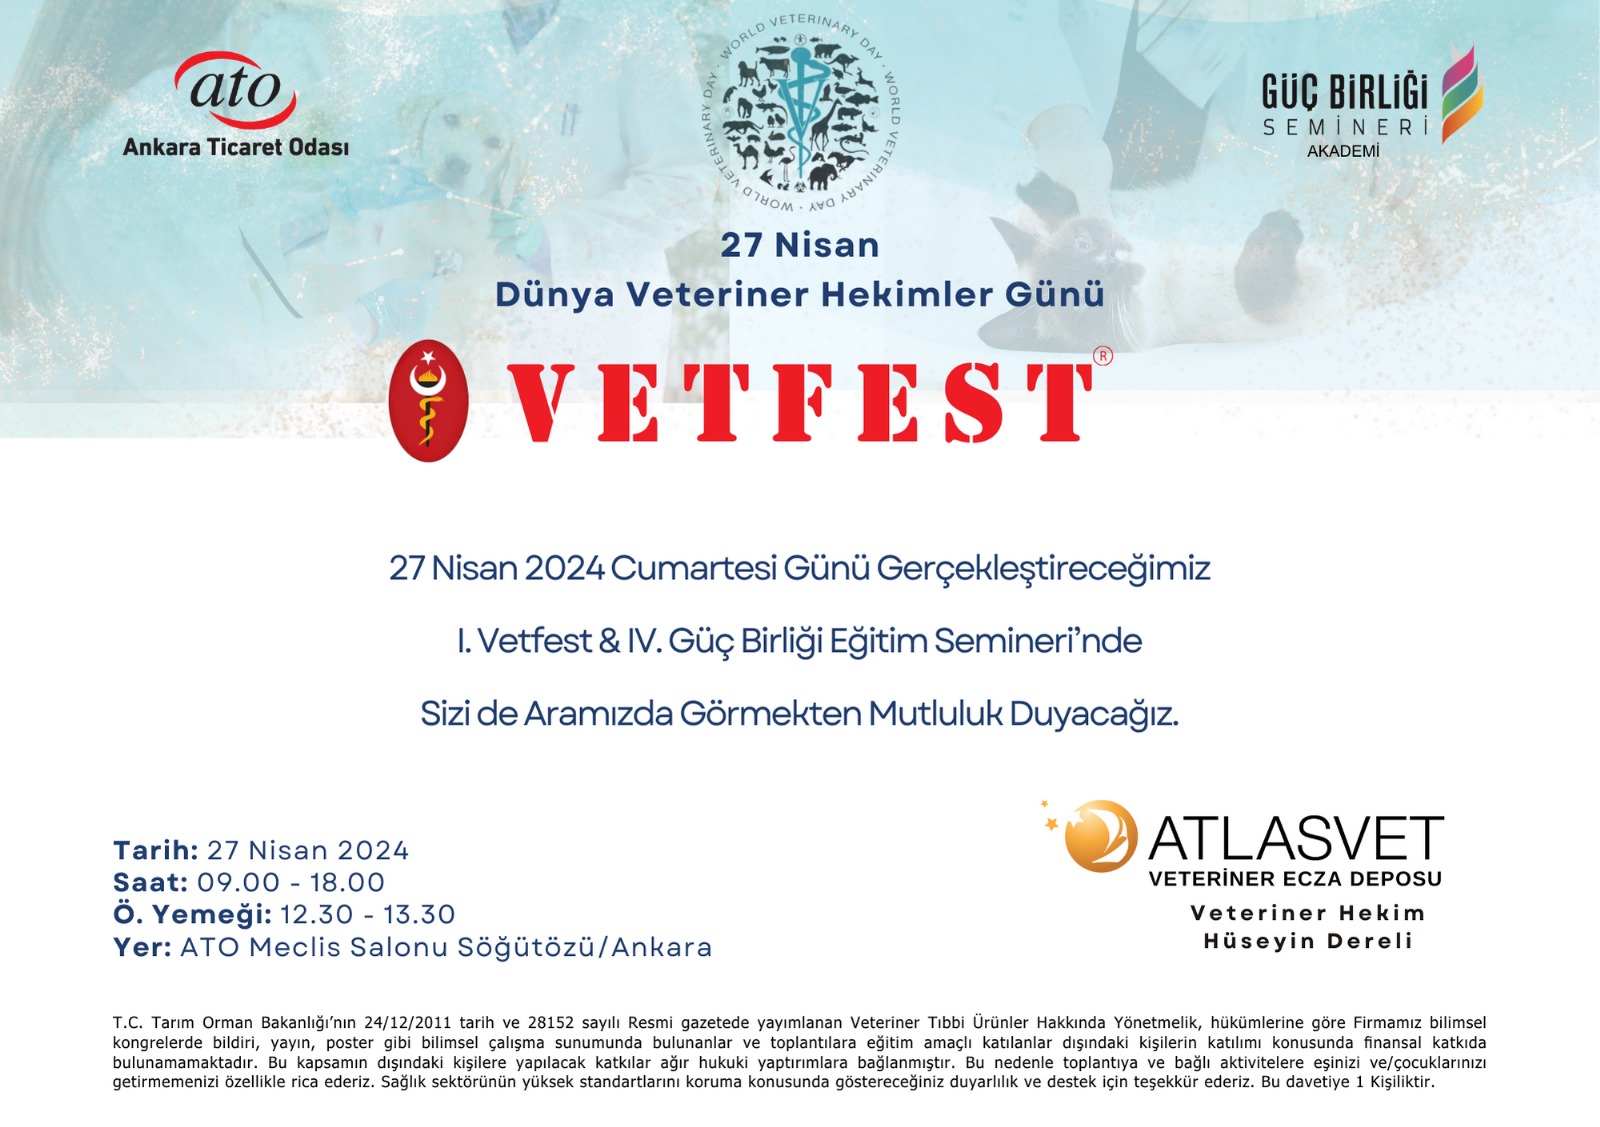 ATO ve AtlasVet Veteriner Ecza Deposu iş birliği: Sertifikalı program...